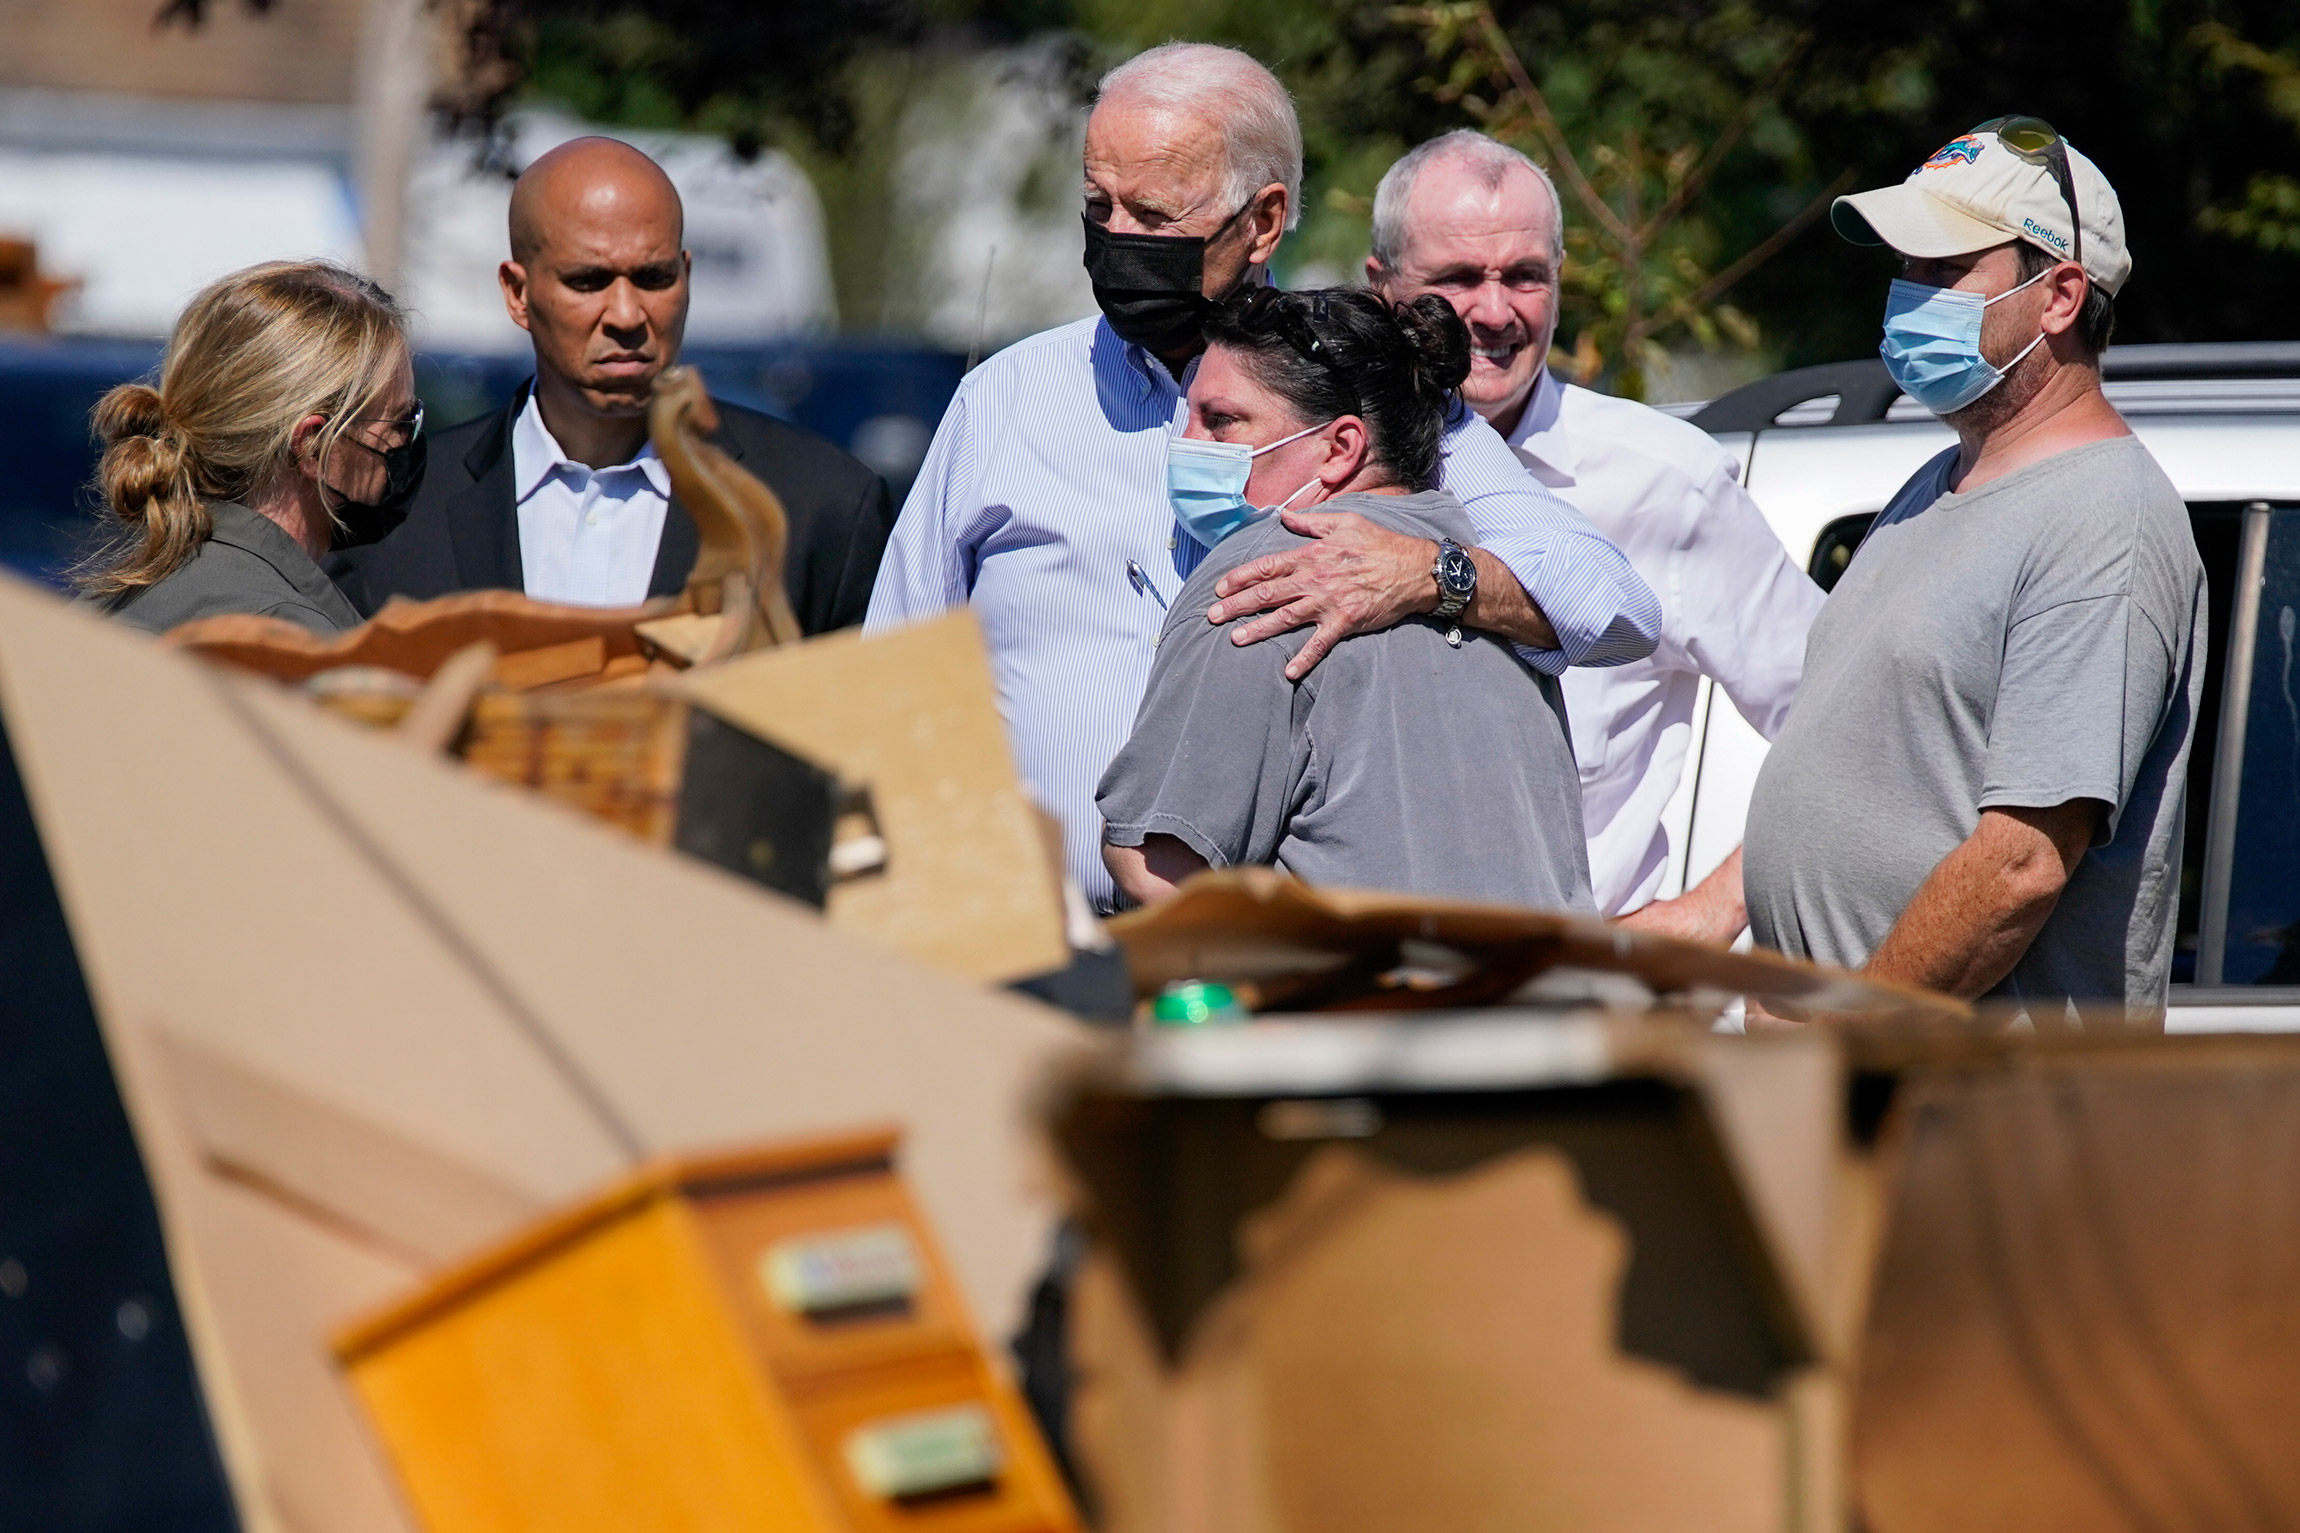 <p>В начале сентября президент США совершил поездку по районам, пострадавшим от <a href="https://www.rbc.ru/photoreport/30/08/2021/612cdec09a794782c50d0698">урагана &laquo;Ида&raquo;</a>.</p>

<p>На фото: Джо Байден (в центре), сенатор Кори Букер (второй слева) и губернатор Нью-Джерси Фил Мерфи (второй справа) в городе Мэвилл (Нью-Джерси) 7 сентября</p>